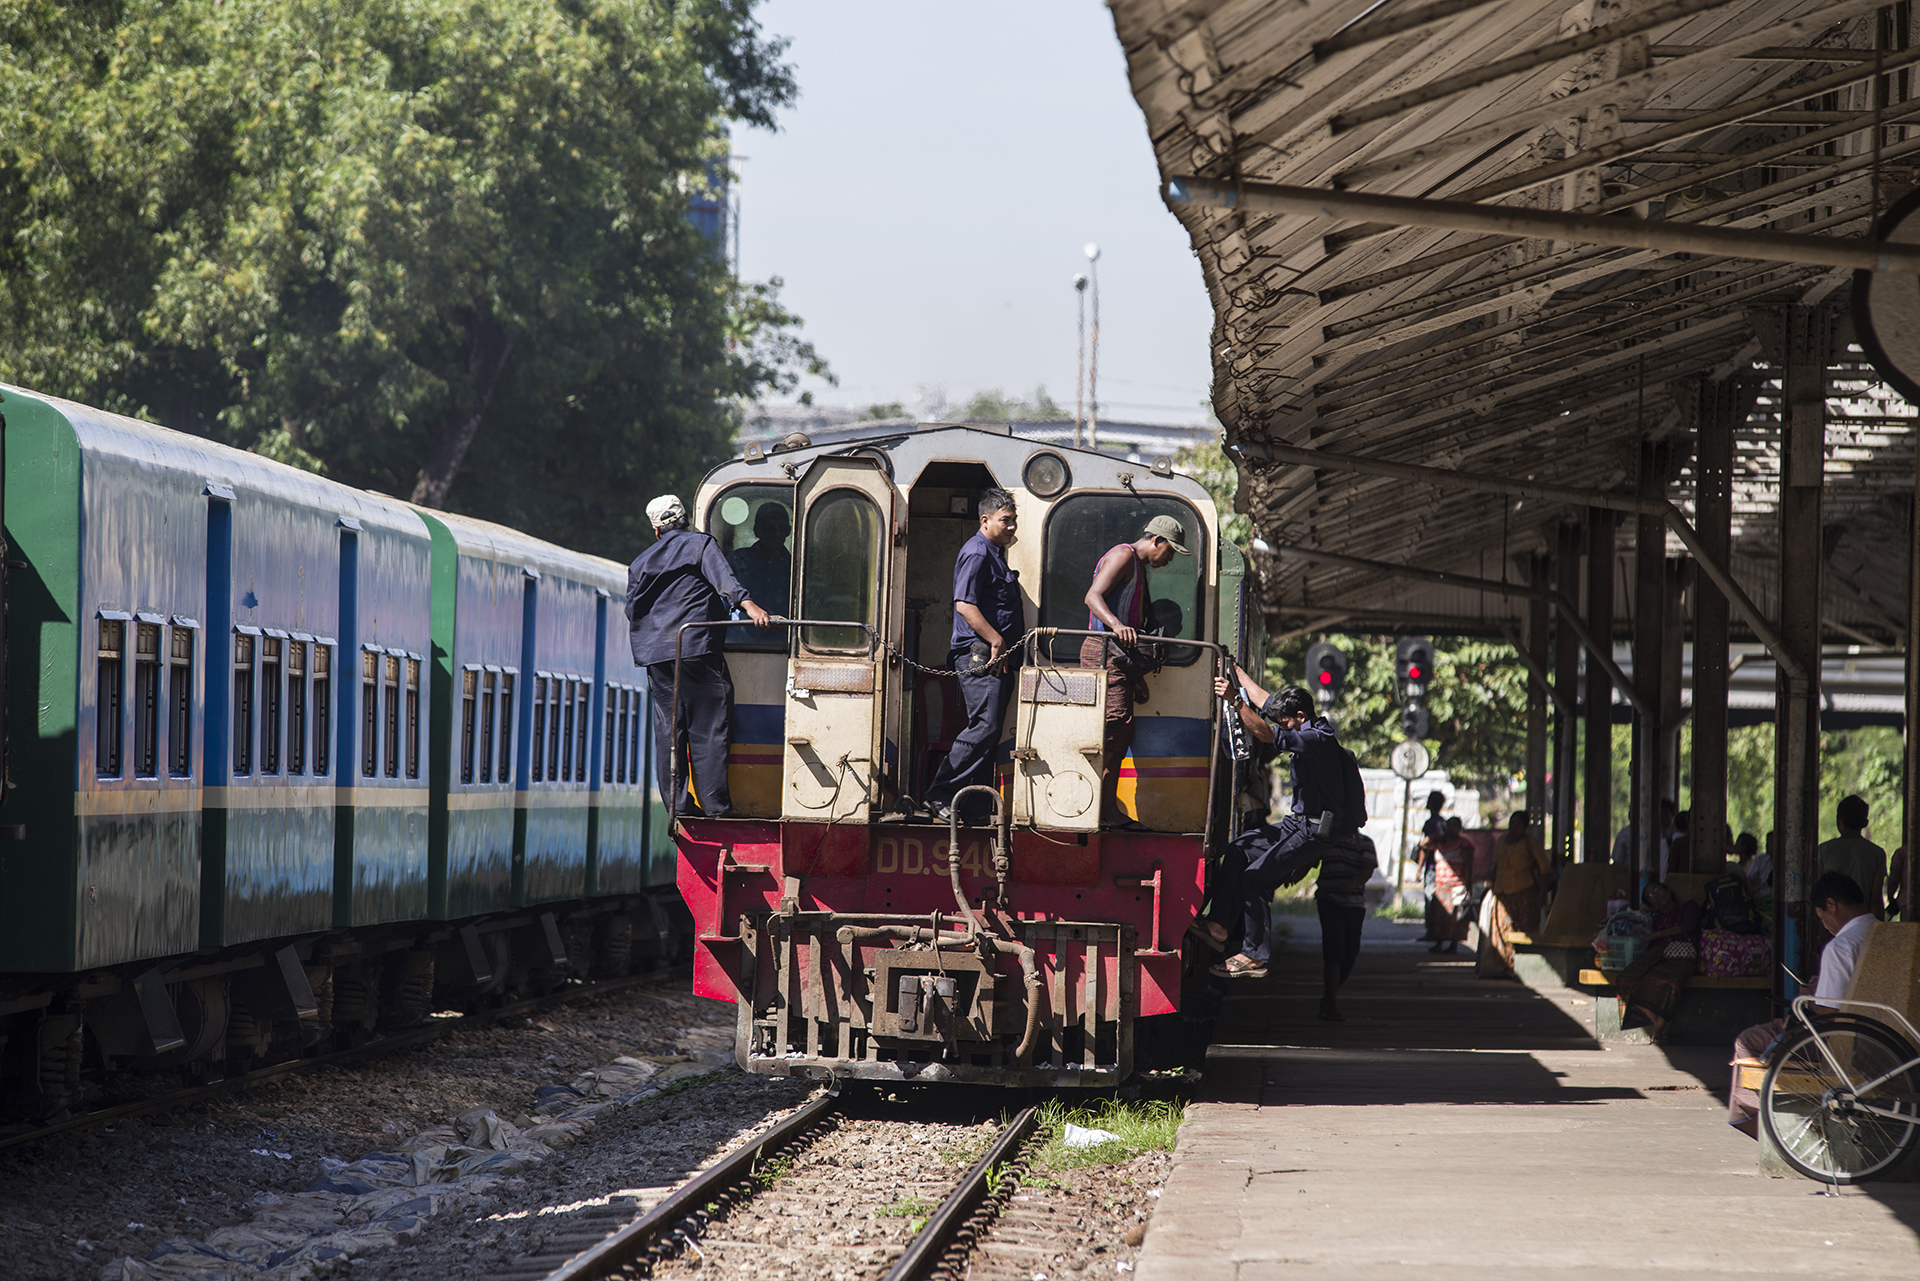 Yangons Circular train